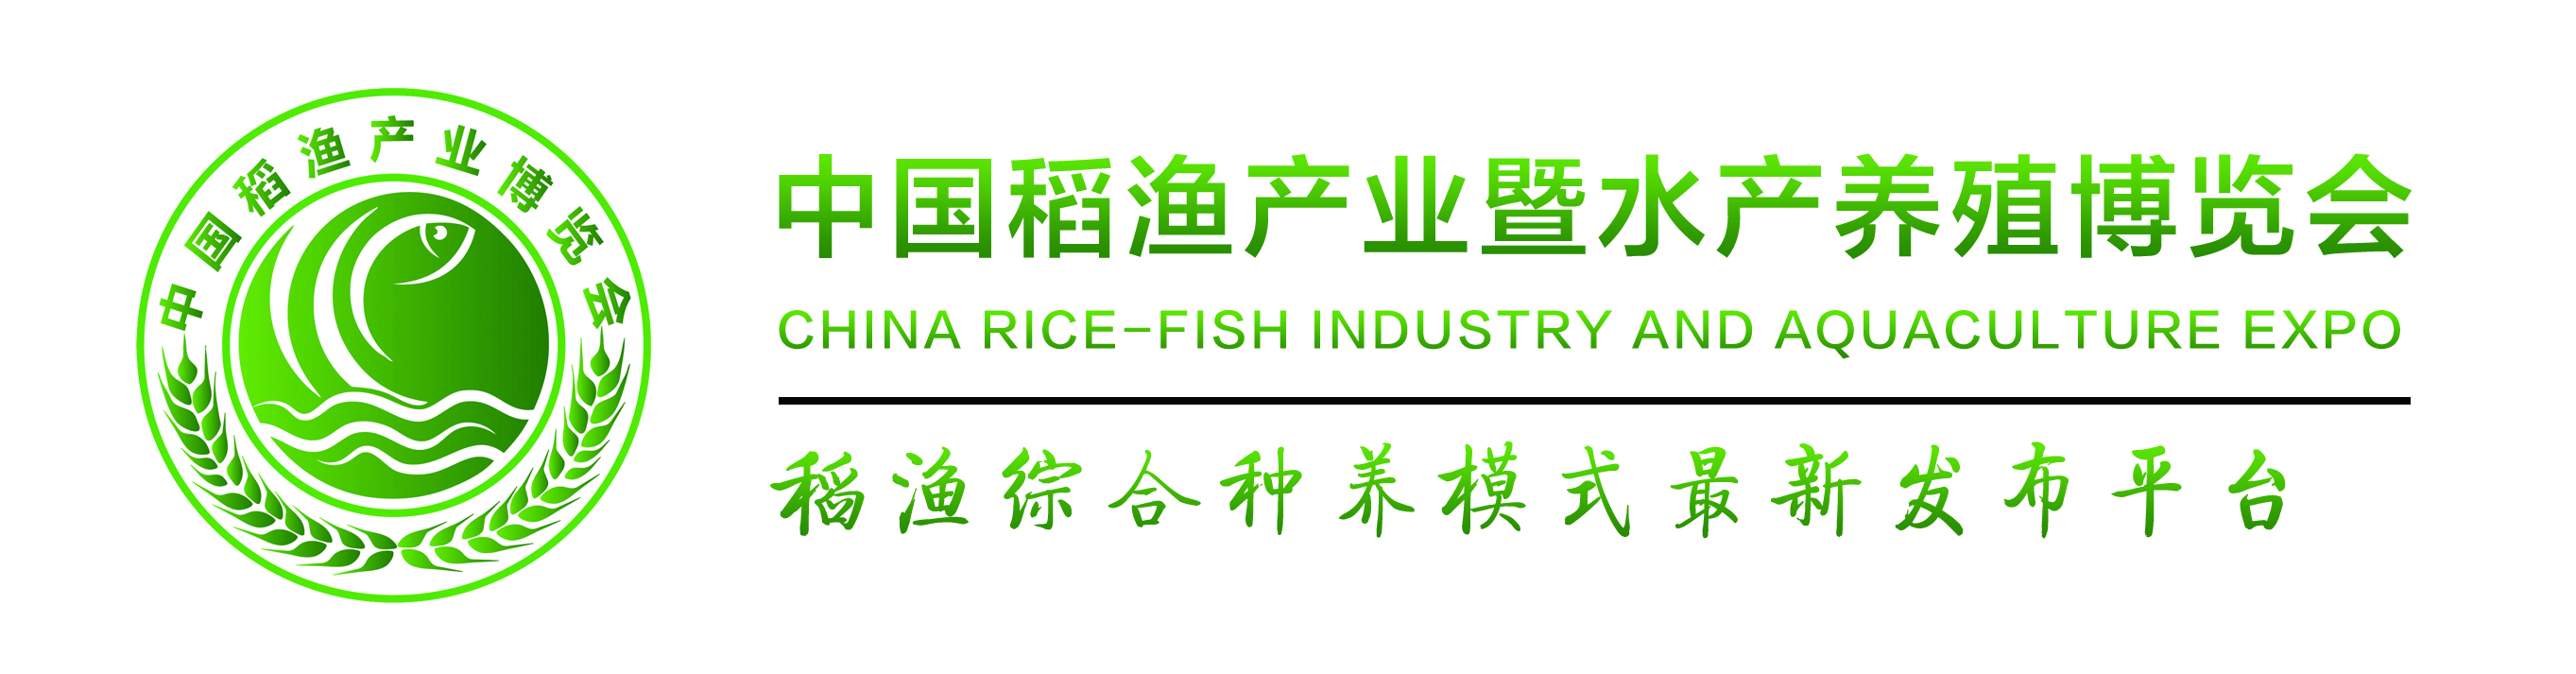 2019中国(安徽)稻渔综合种养暨水产养殖博览会